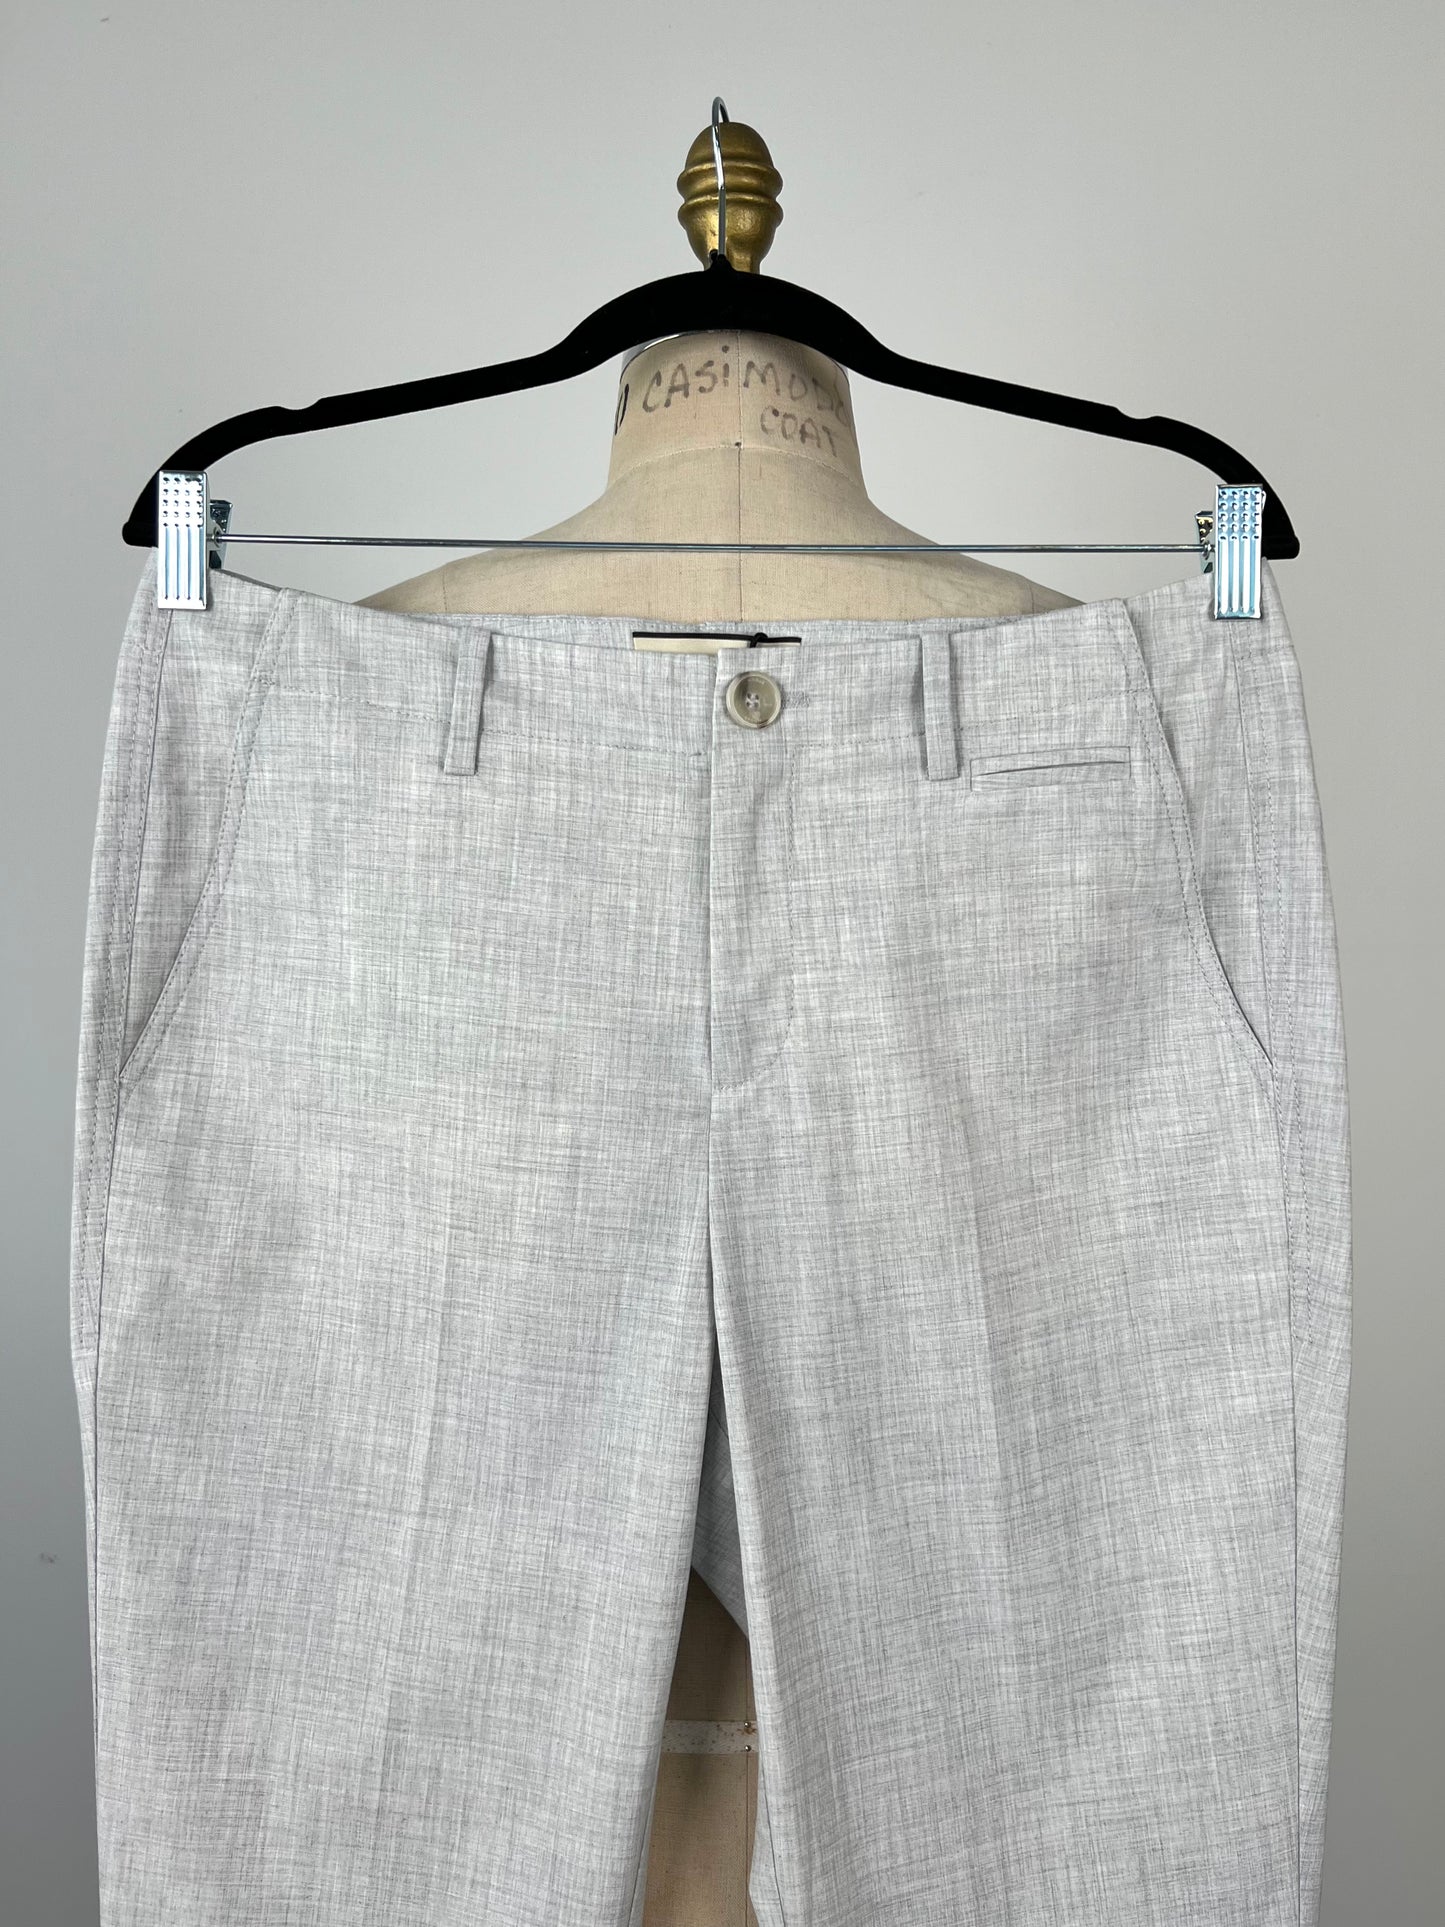 Pantalon sport chic gris tramé crème (4+8)